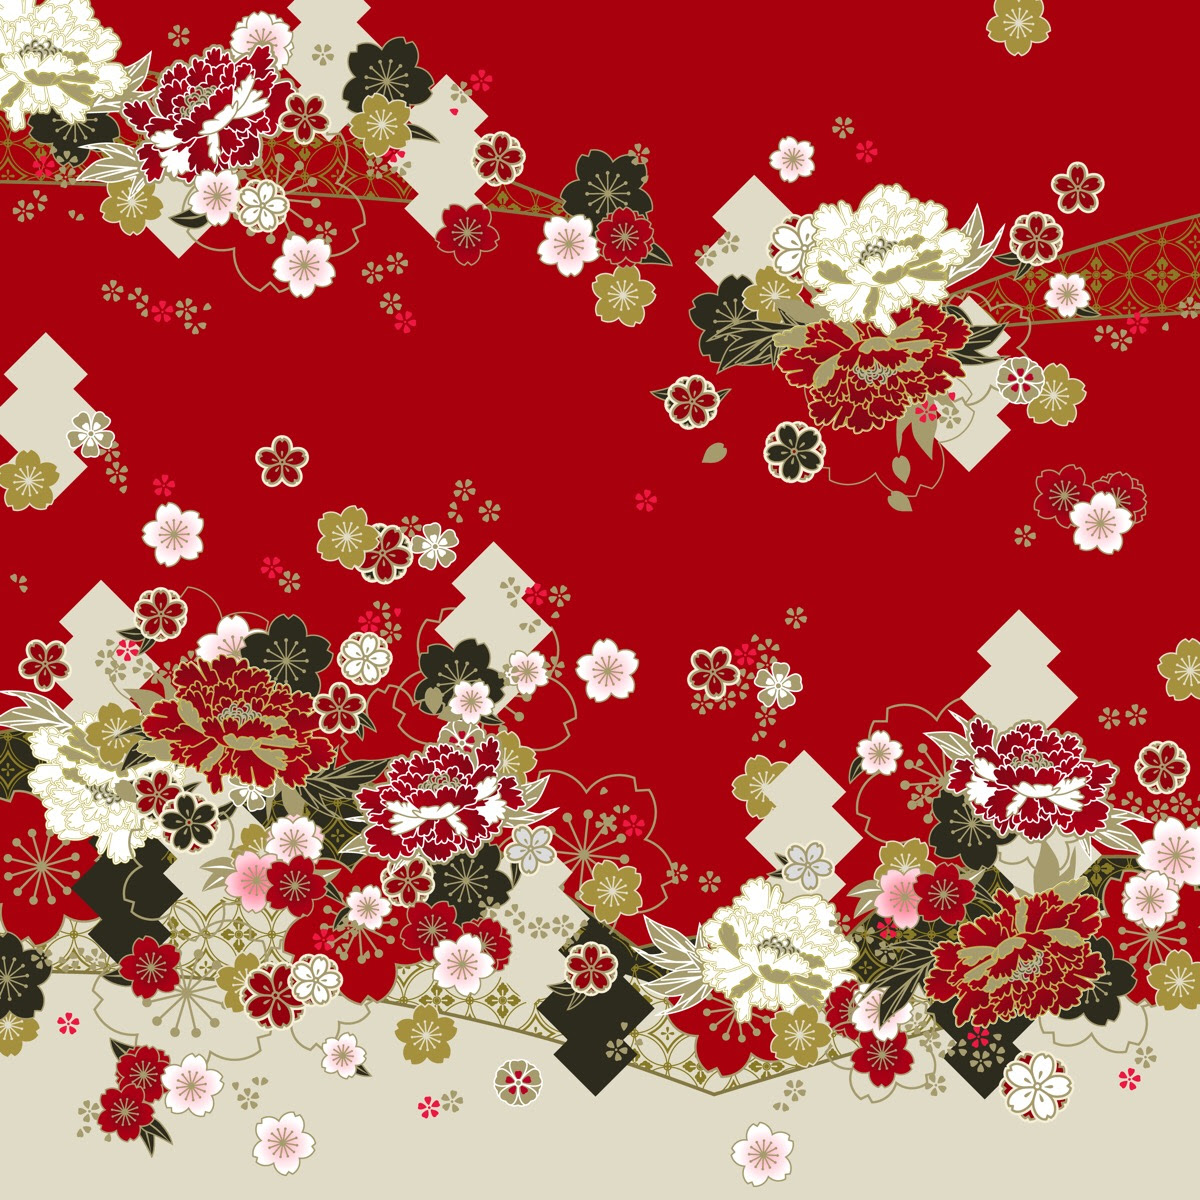 日本和风樱花背景图图片大全 日本和风樱花背景图图片在线观看 梨子网